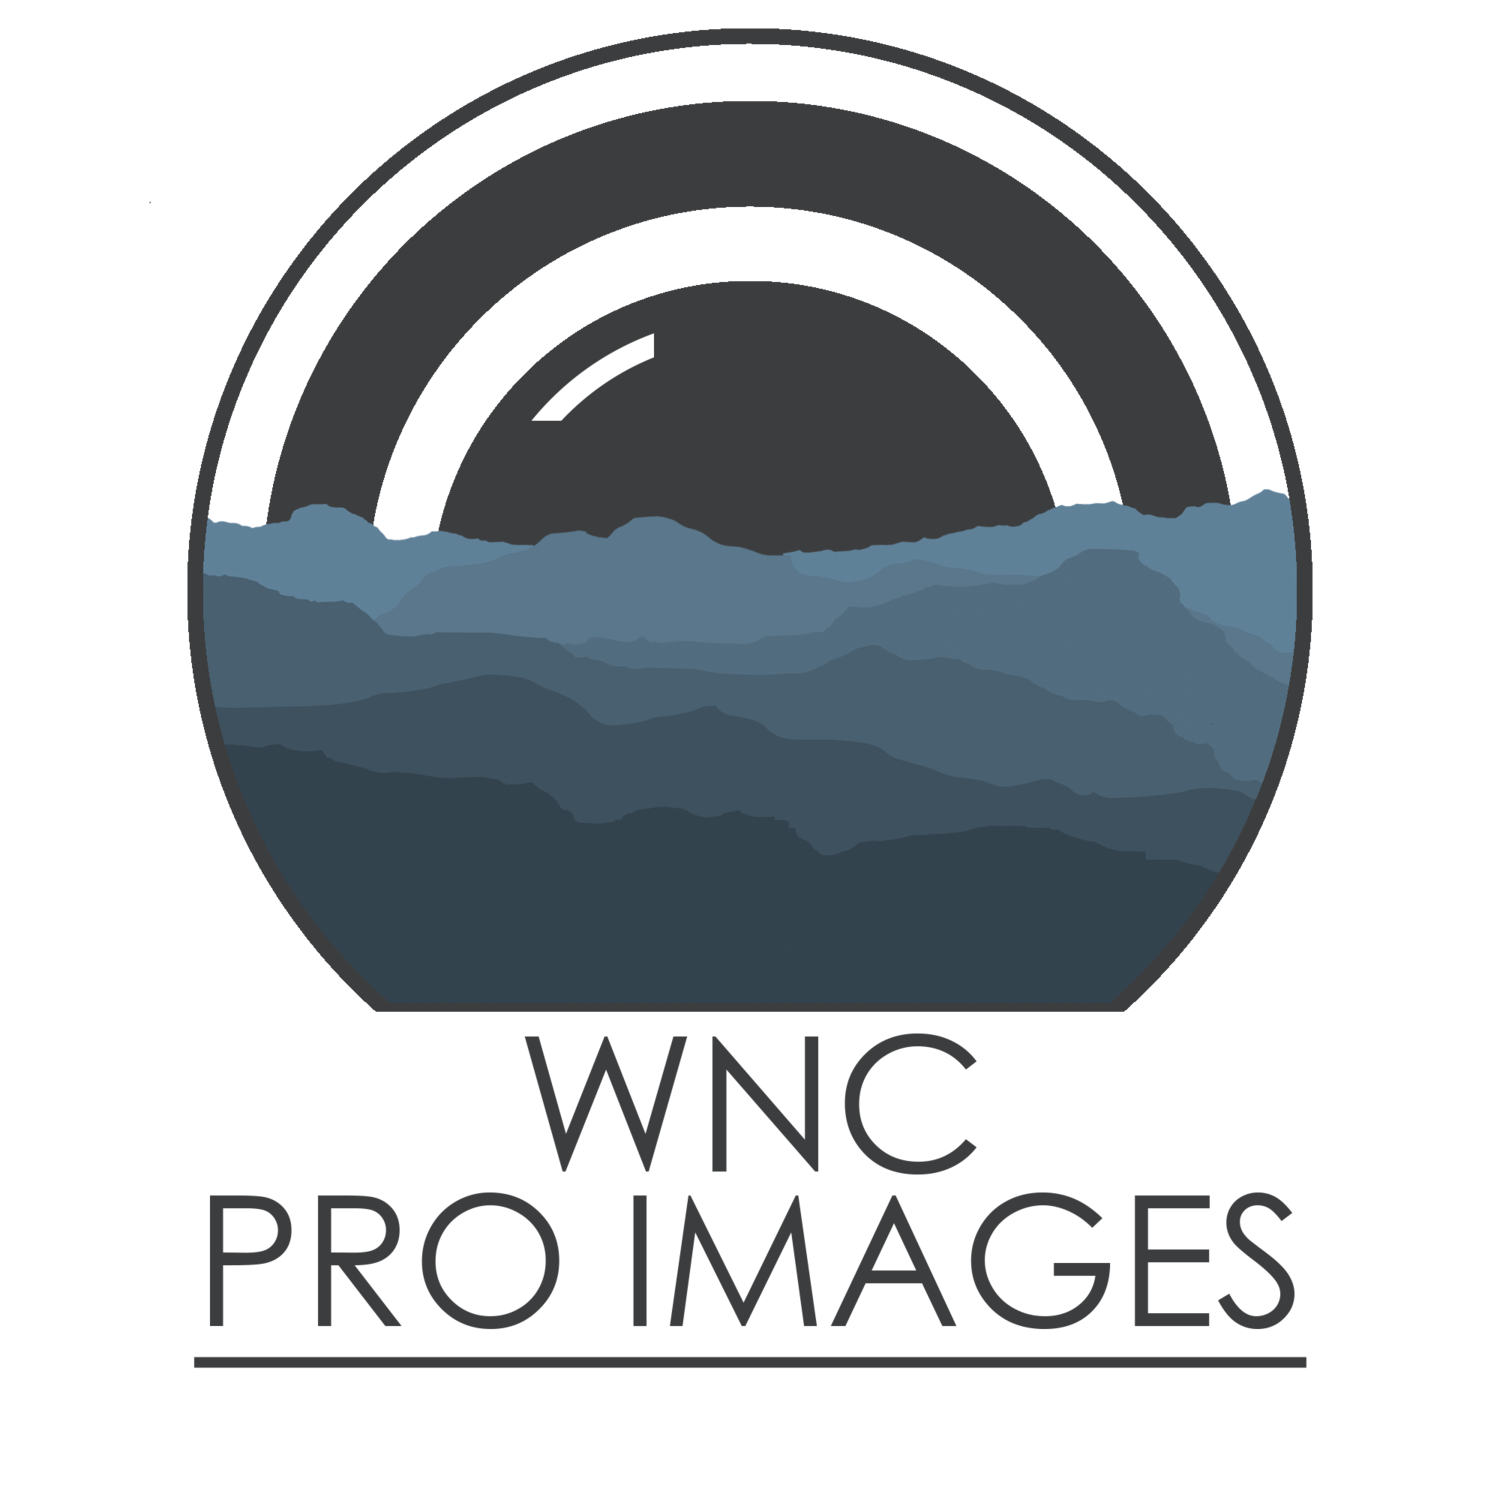 WNC Pro Images